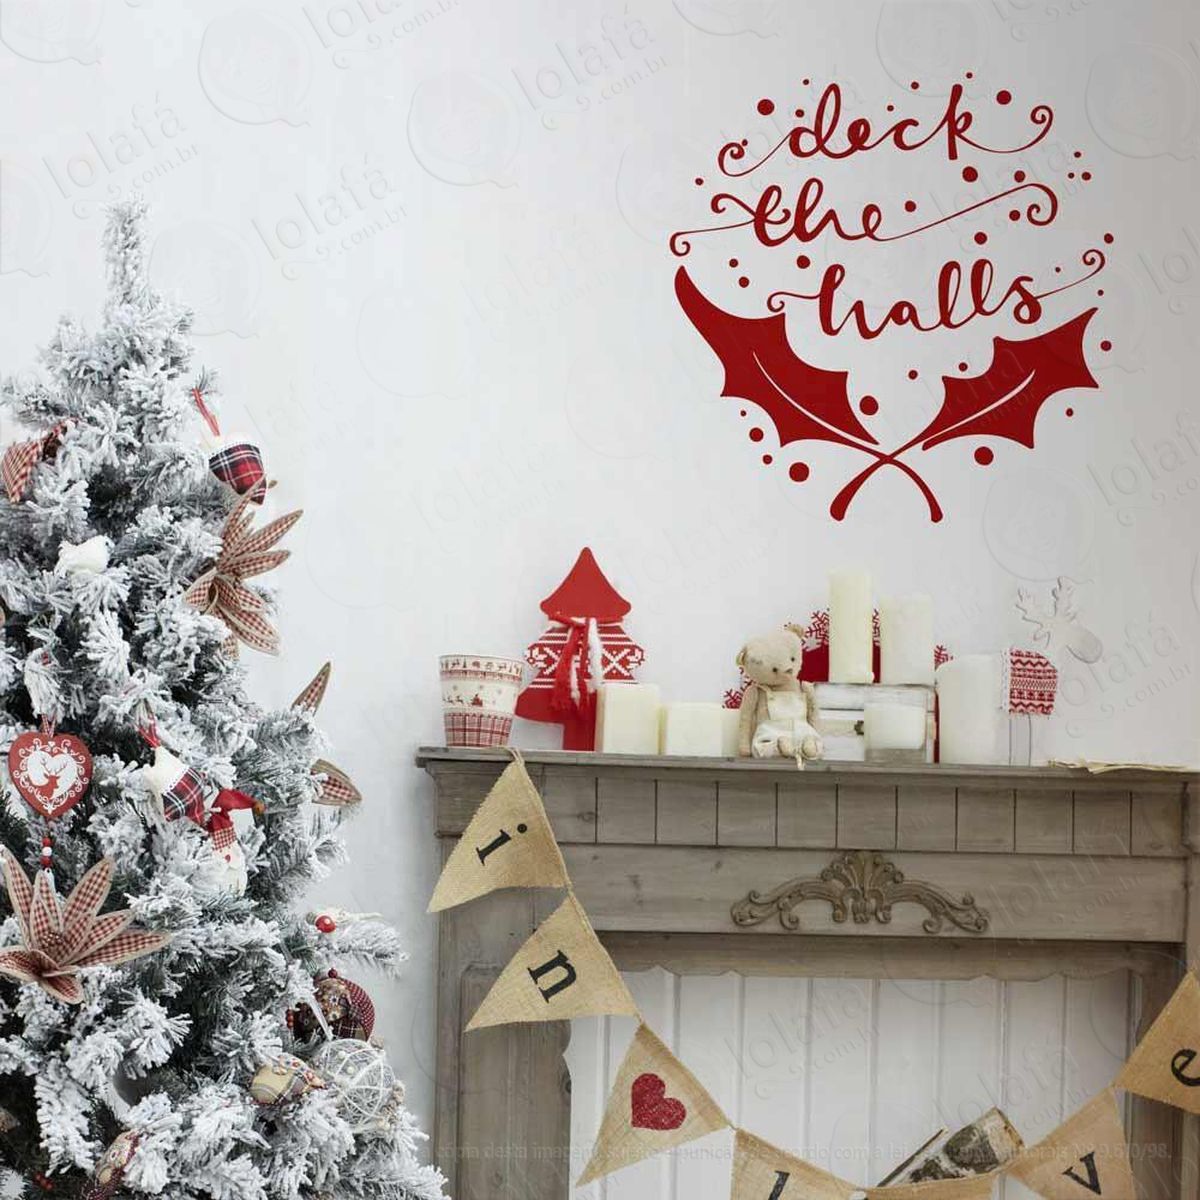 deck the halls adesivo de natal para vitrine, parede, porta de vidro - decoração natalina mod:41